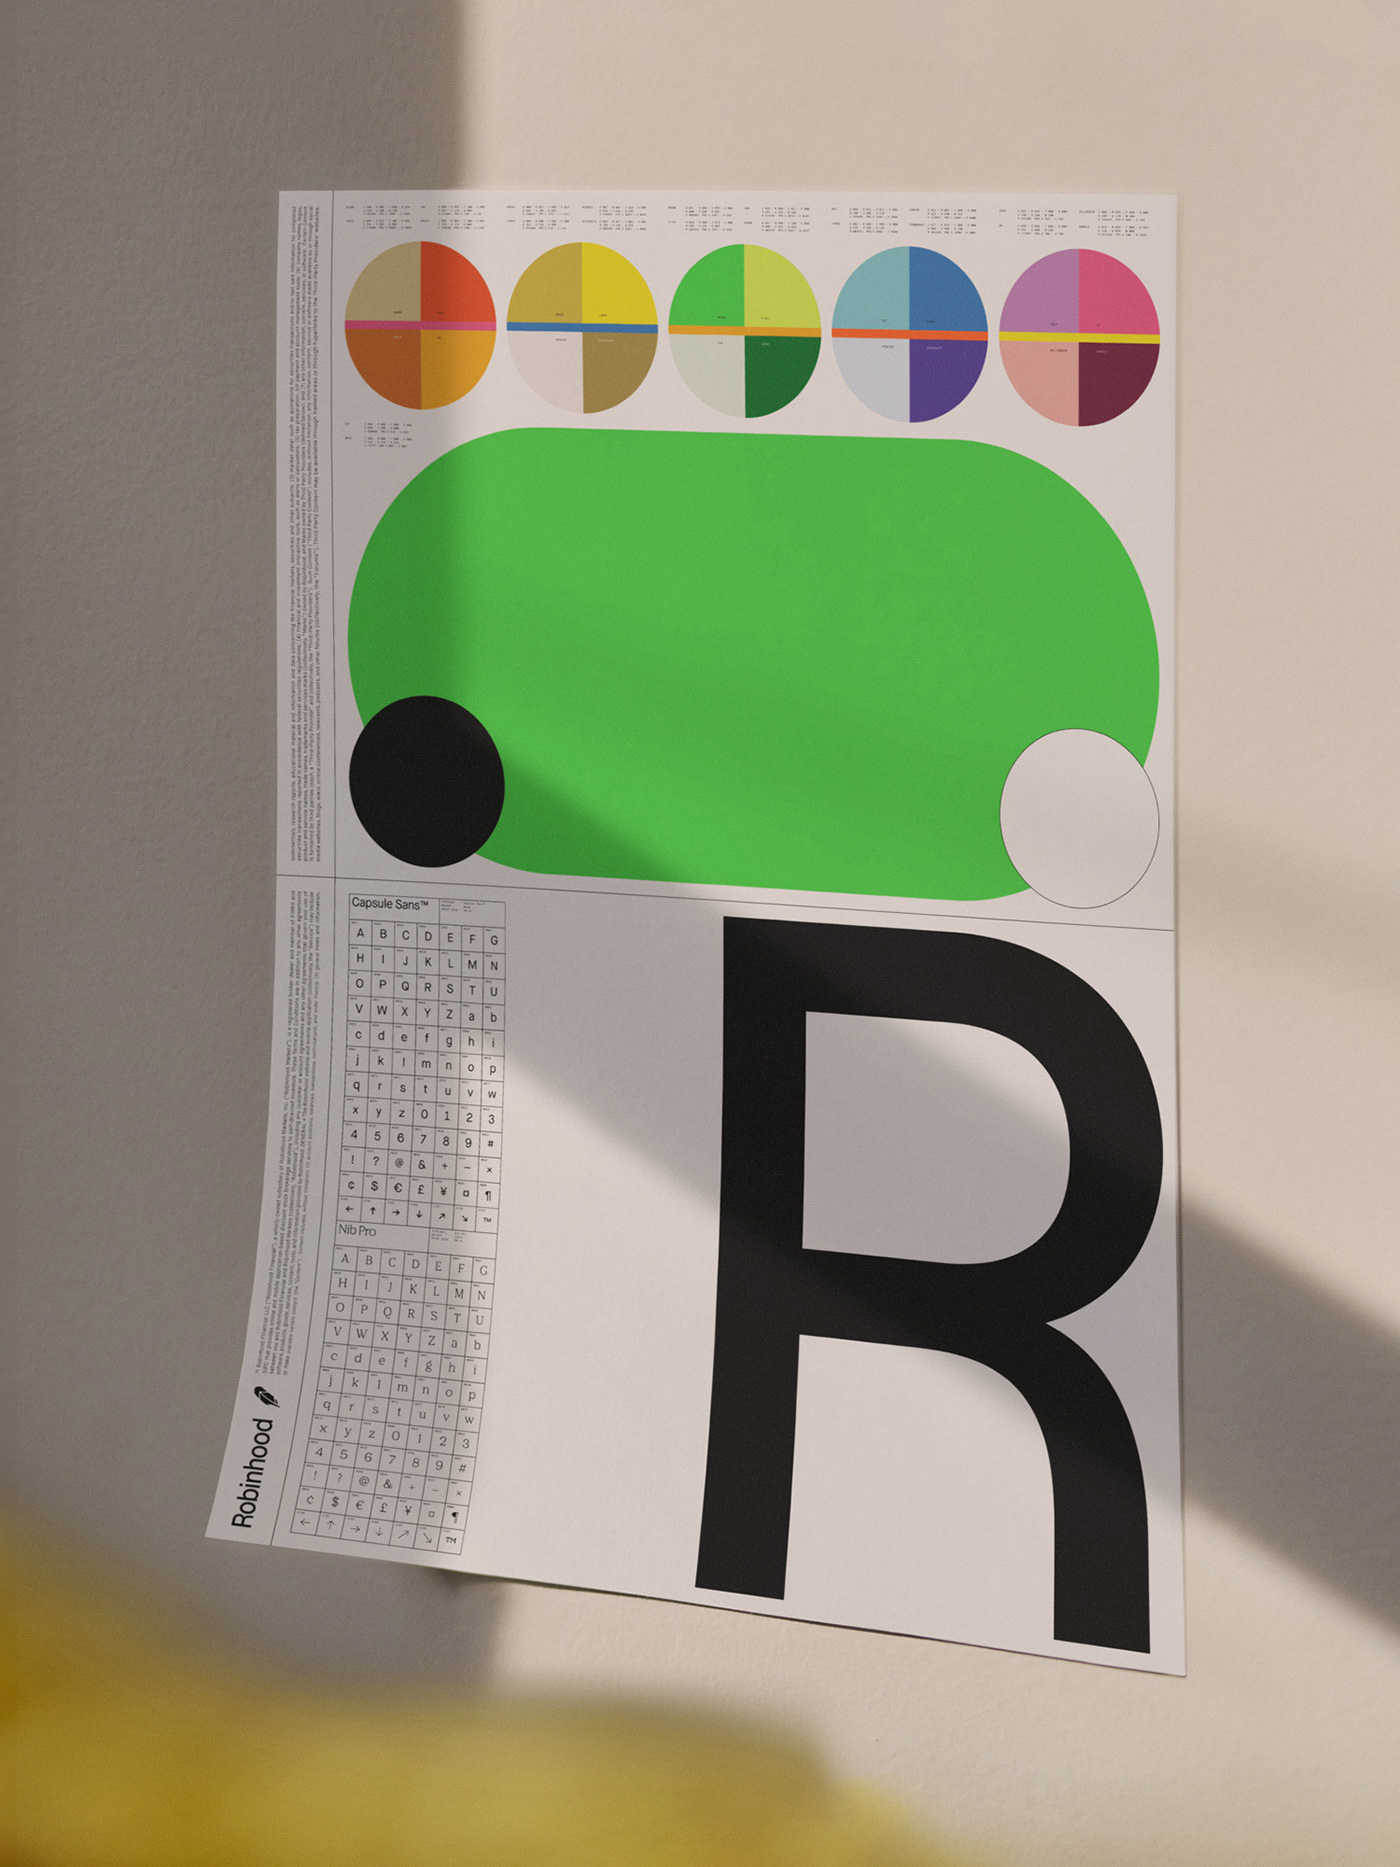 平面设计 | Robinhood 金融品牌形象设计